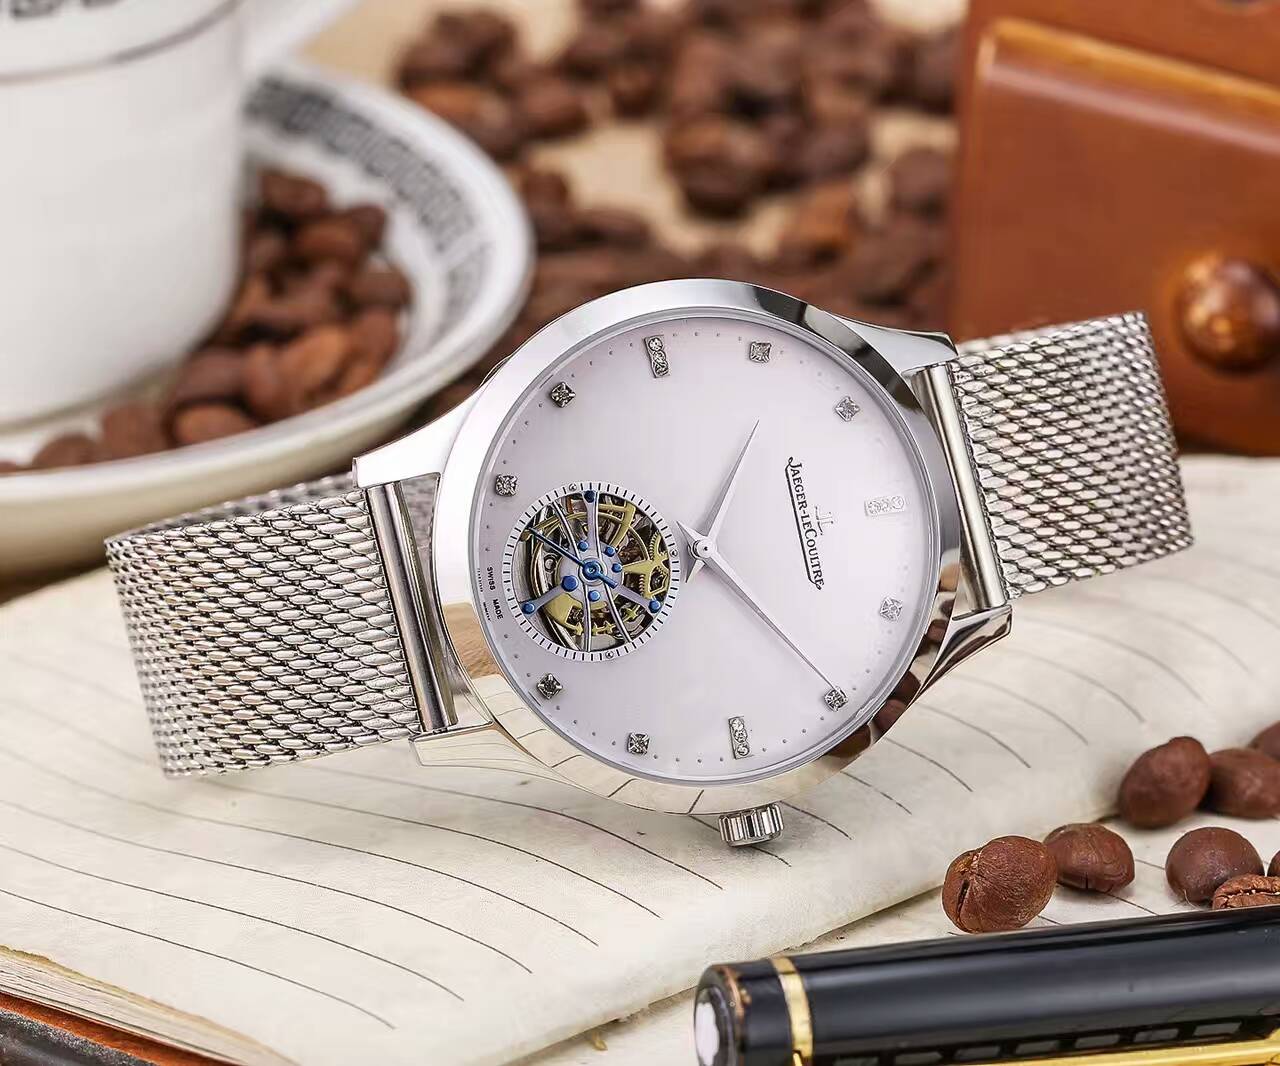 積家 礦物質超強鏡面 精鋼錶帶 精致品質 316精鋼 大方風范 精品男士腕錶